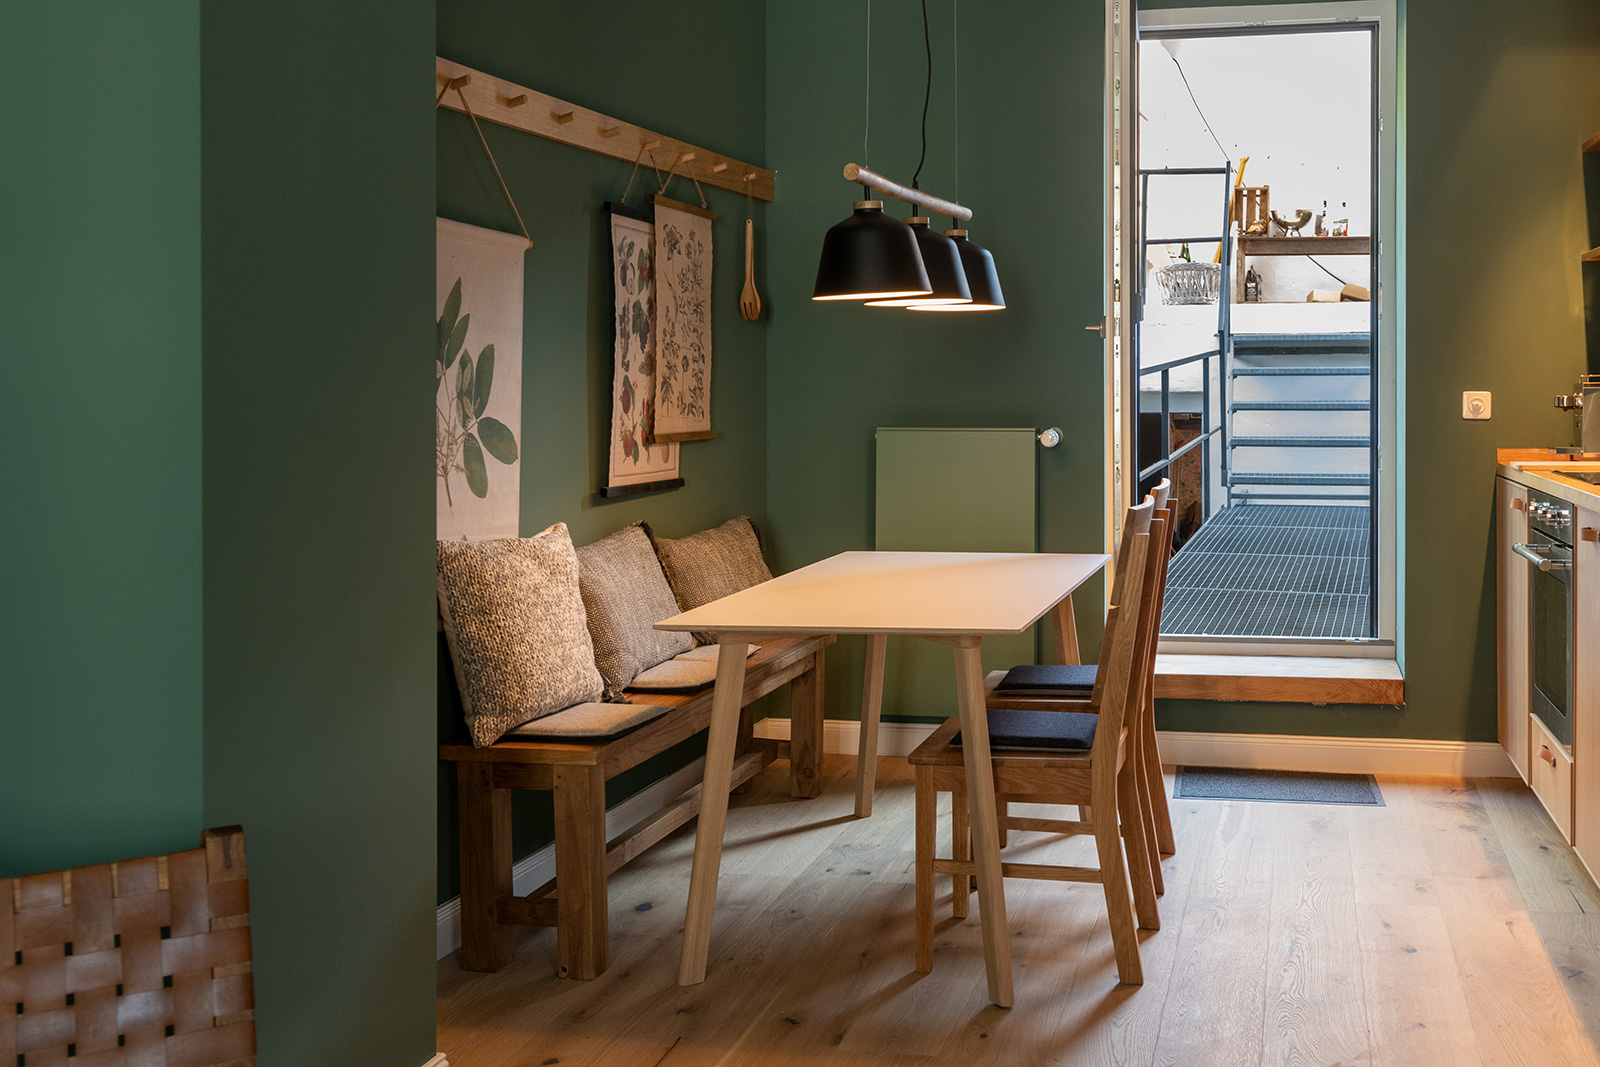 Küche: Essbereich vor Wandkarten und Tür zur Terrassen-Lounge